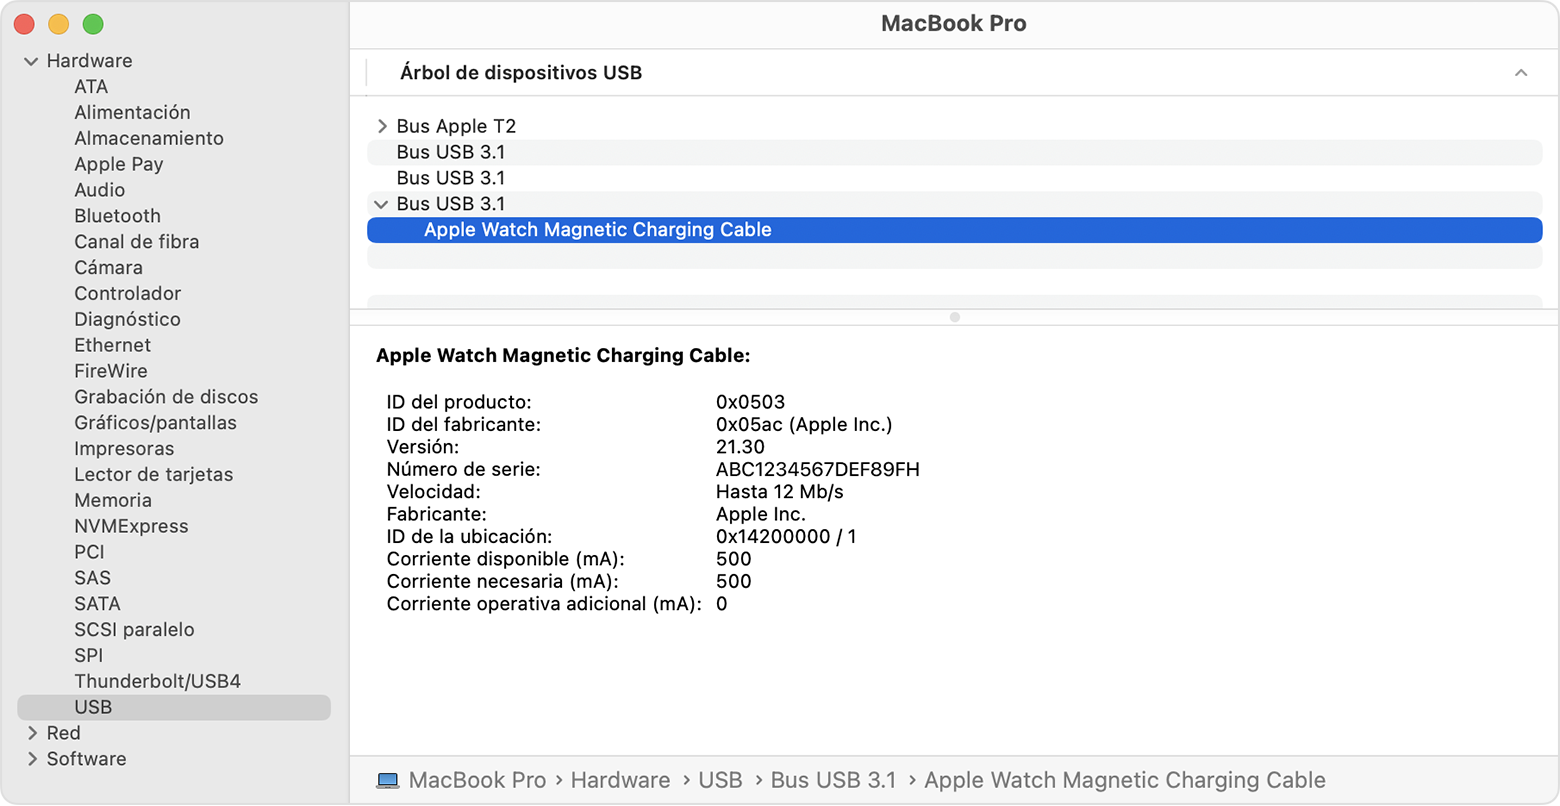 Informe del sistema del MacBook Pro que muestra los detalles del fabricante del cable de carga magnética para el Apple Watch